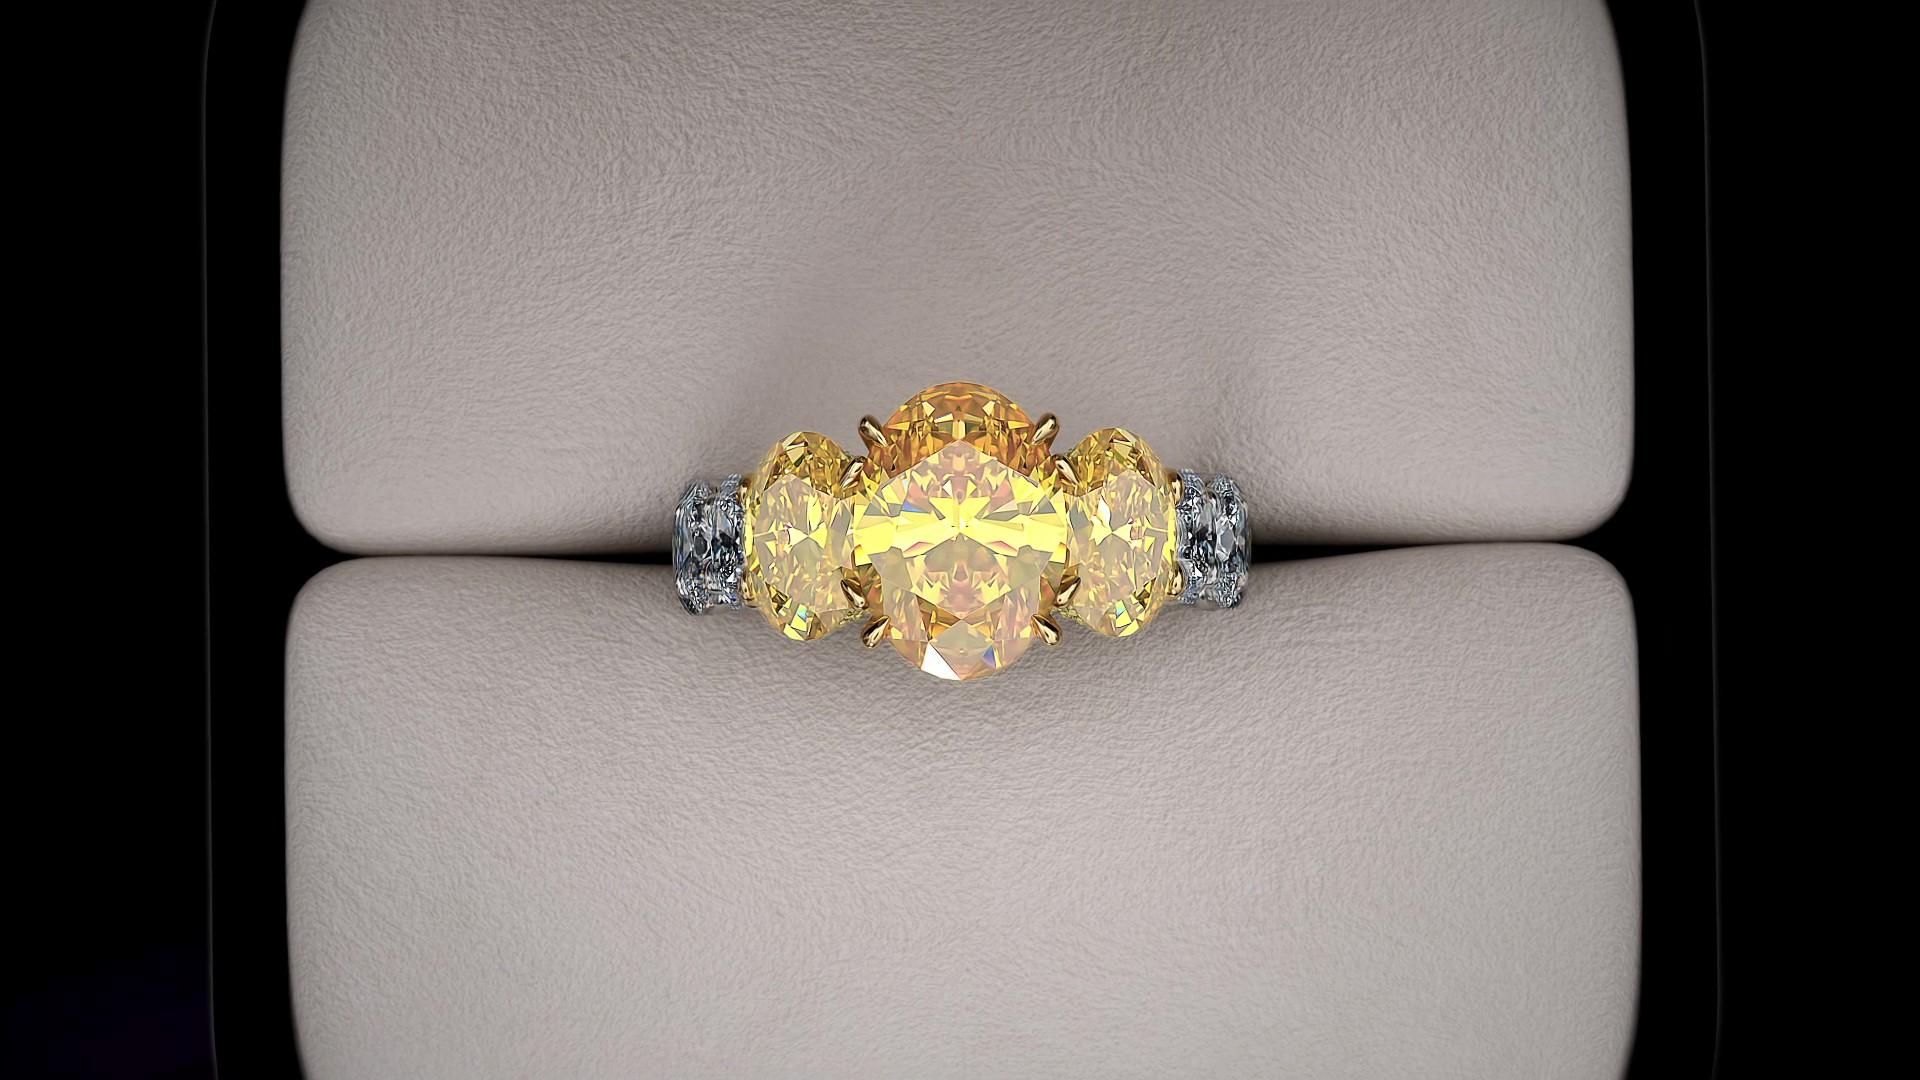 5,04 carats de diamants ovales d'un jaune intense certifié par le GIA, d'une clarté comprise entre VVS et VS, d'une couleur jaune riche, sans fluorescence, cinq diamants gradués, en or jaune 18 carats et en platine, et environ 3,6 carats de diamants